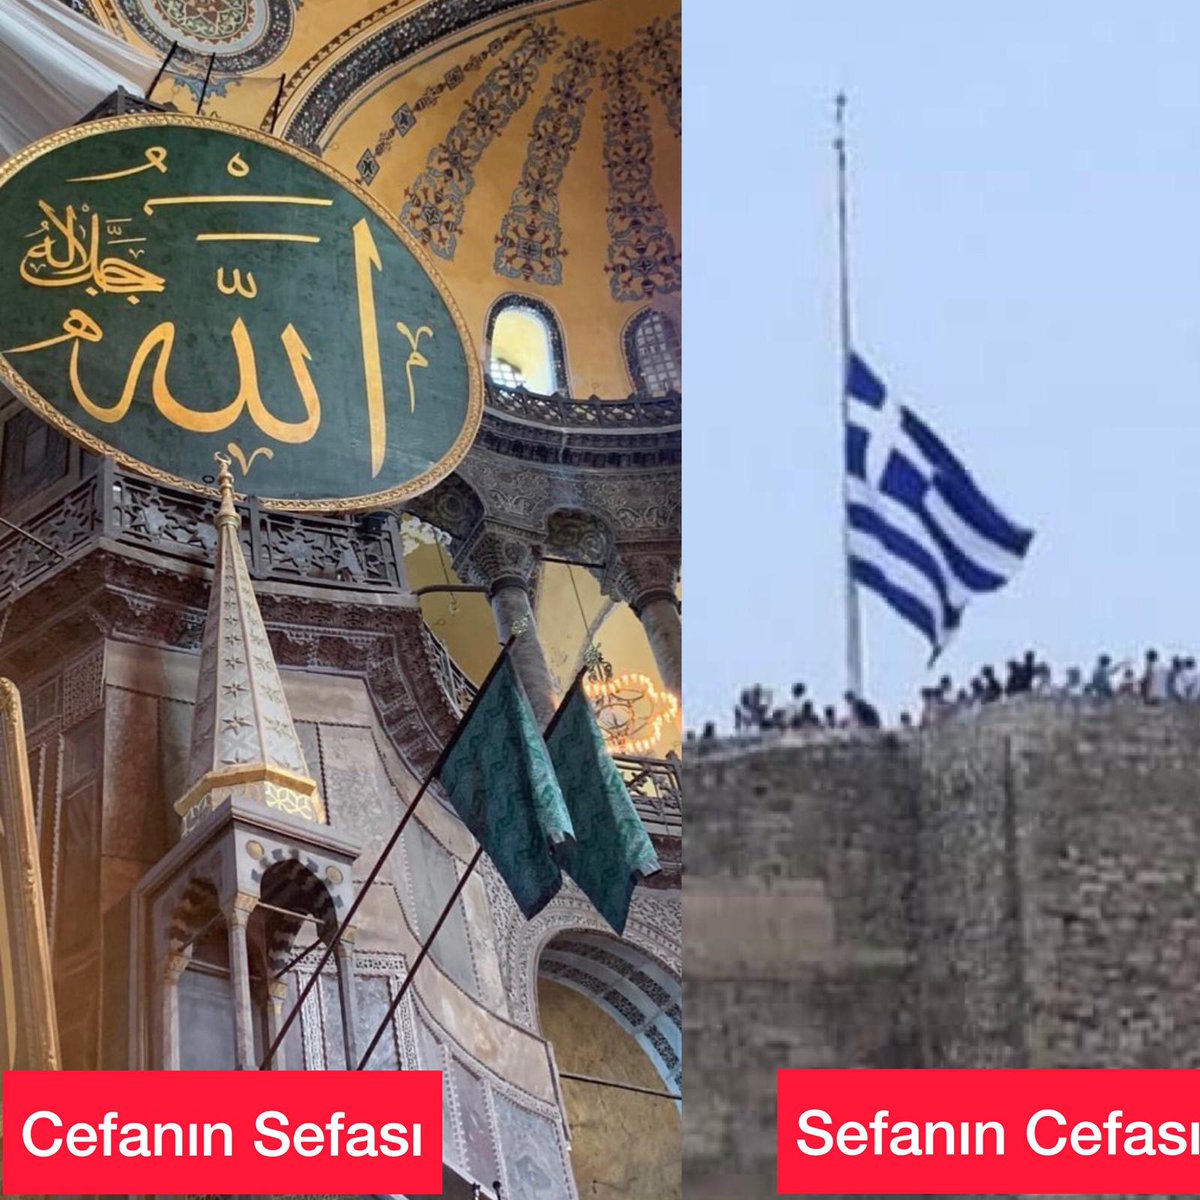 Cefanin sefasını biz,
Sefanin cefasını Yunan çekiyor!  
#AyasofyaKebirCamiiSerifi 
#AyasofyaCamii 
#AllahRazıOlsunReis